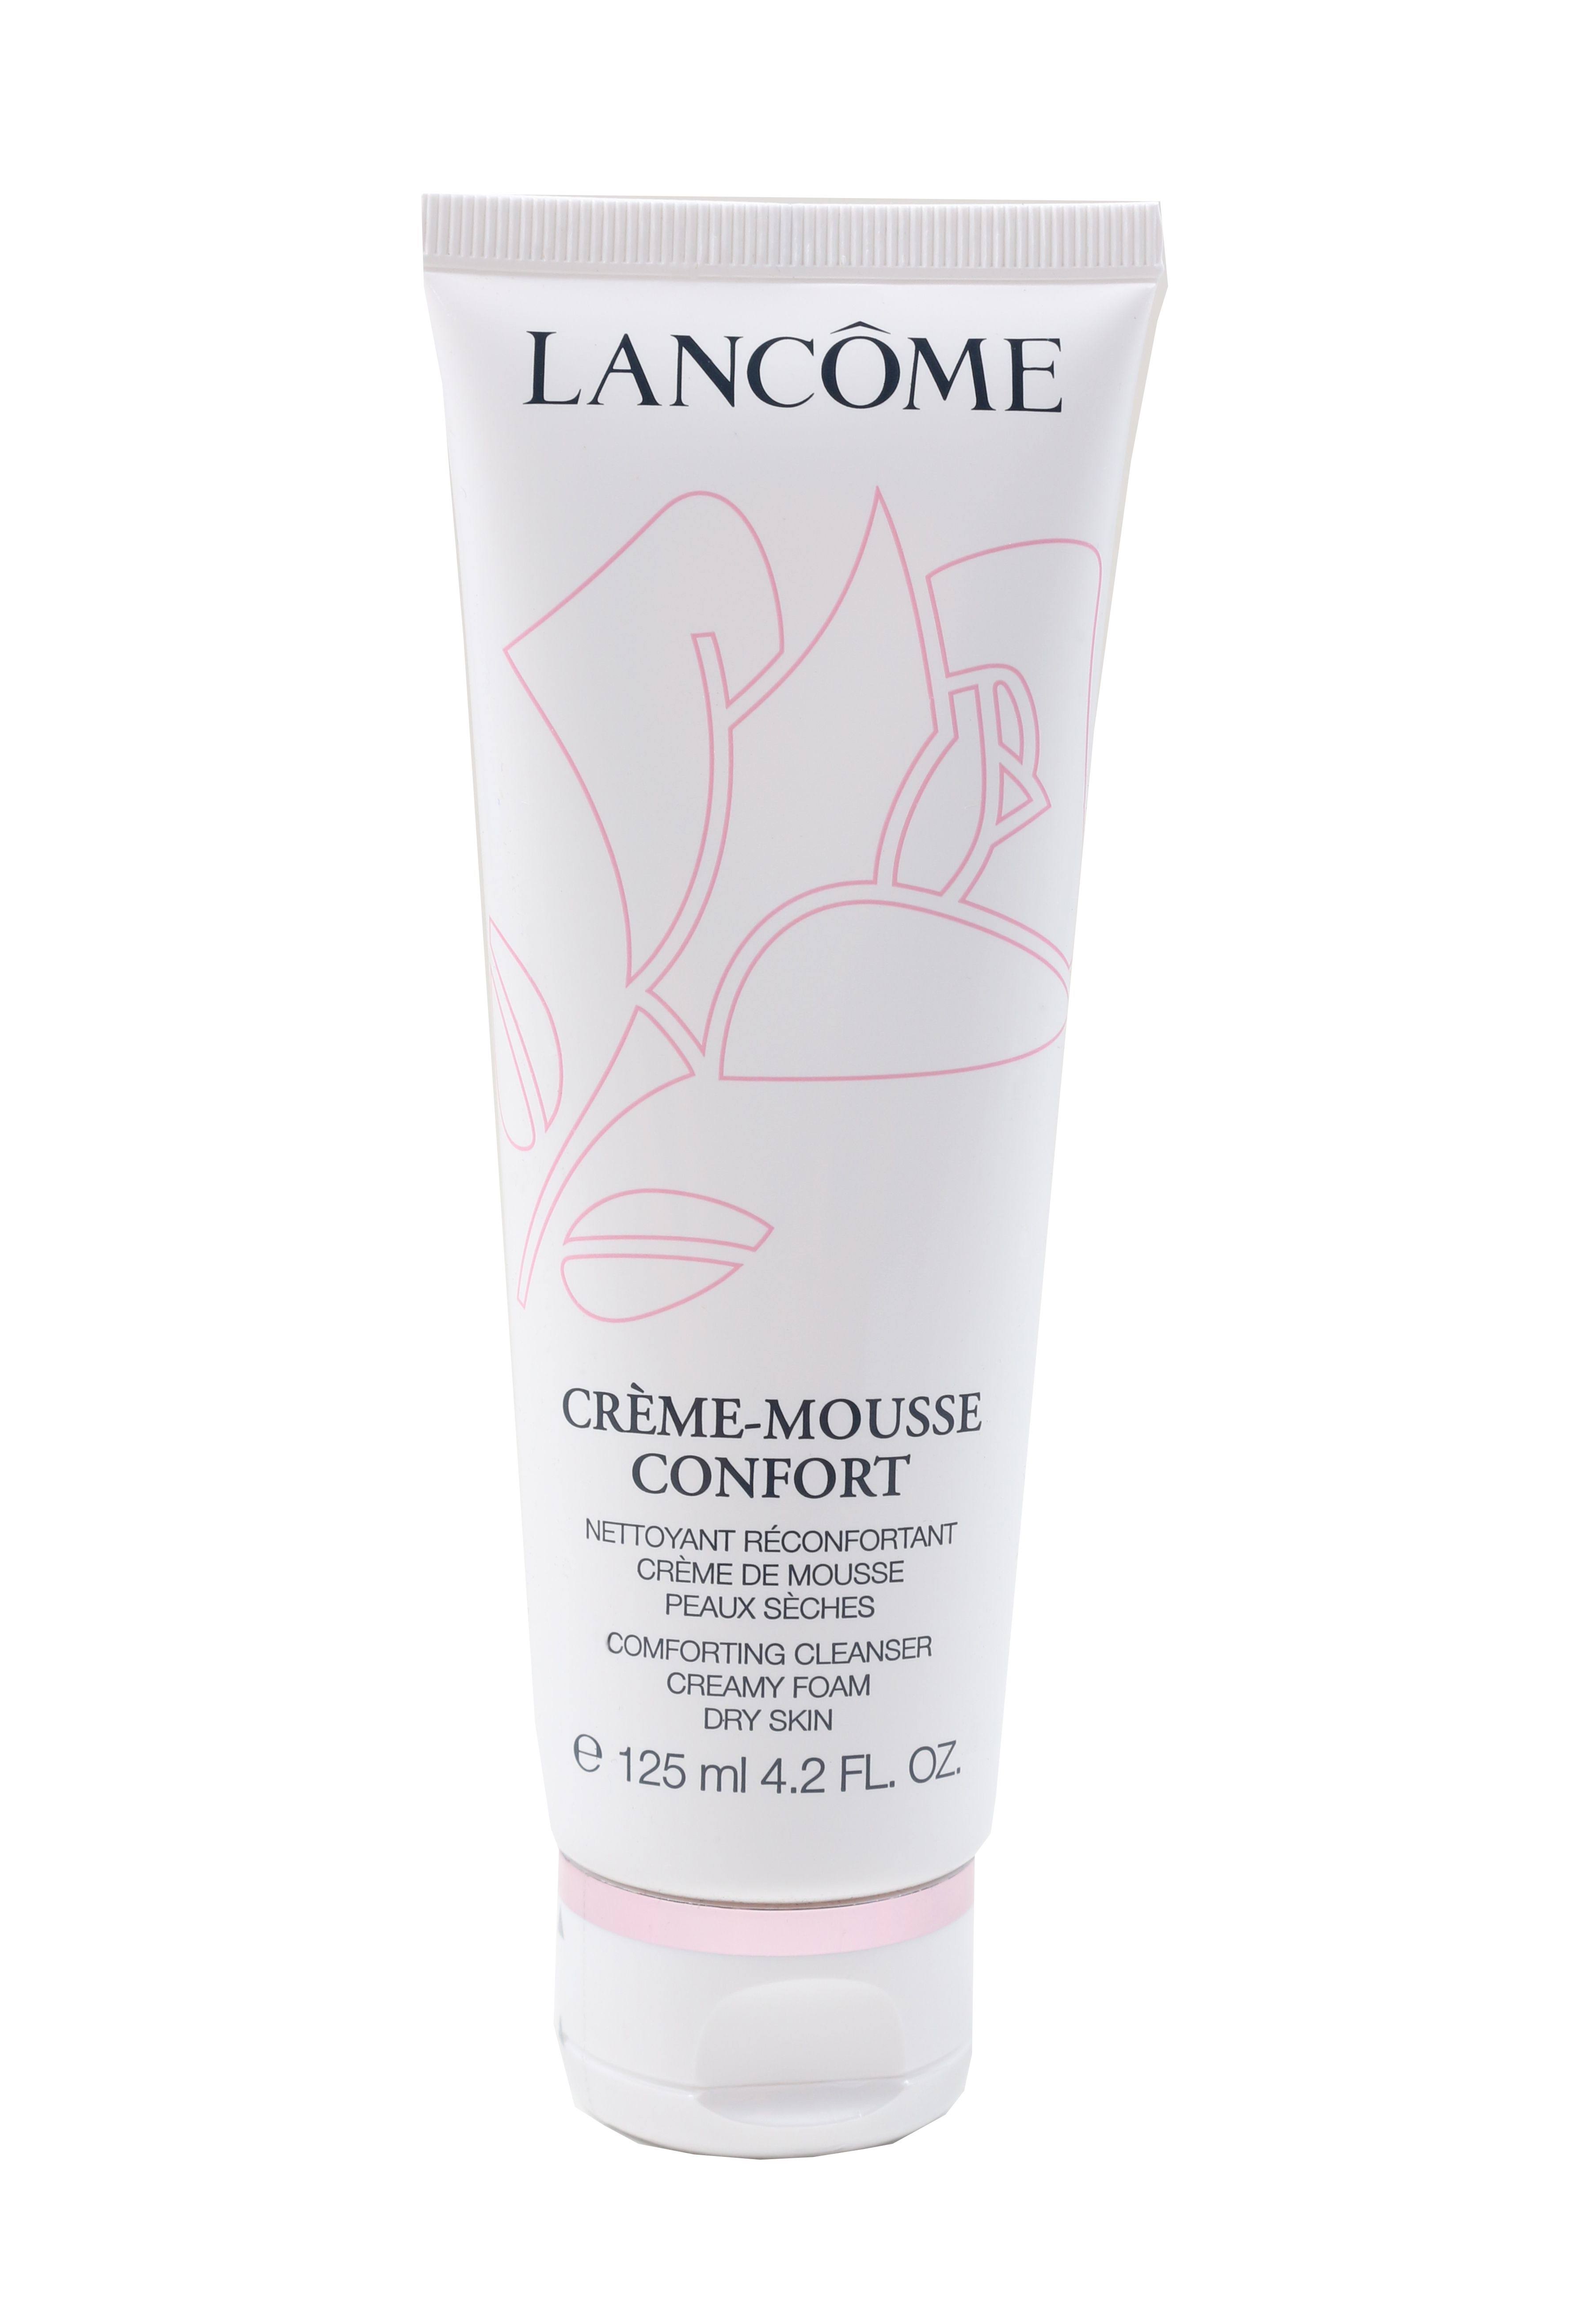 Lancome Creme Mousse Confort - 125ml